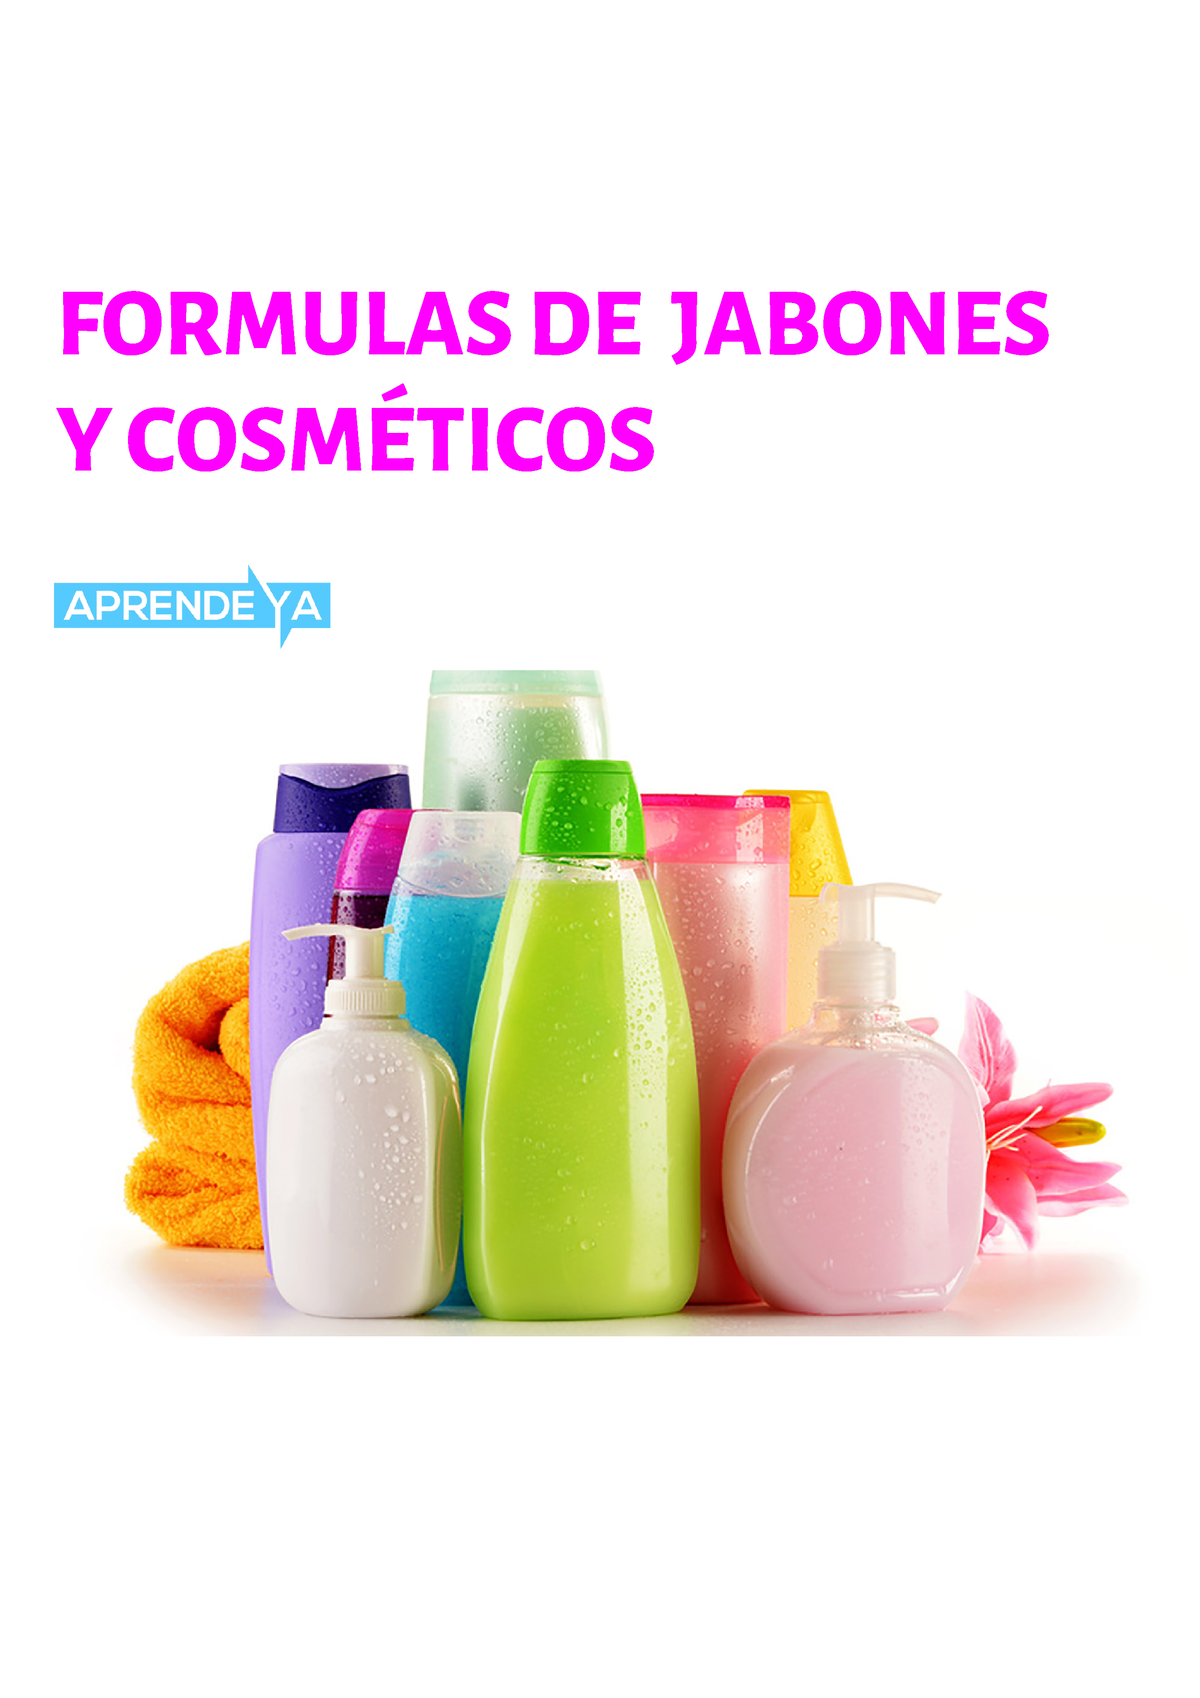 Formulas De Jabones Y Cosmeticos Formulas De Jabones Y CosmÉticos Contenido 1 Jabones 2 0065